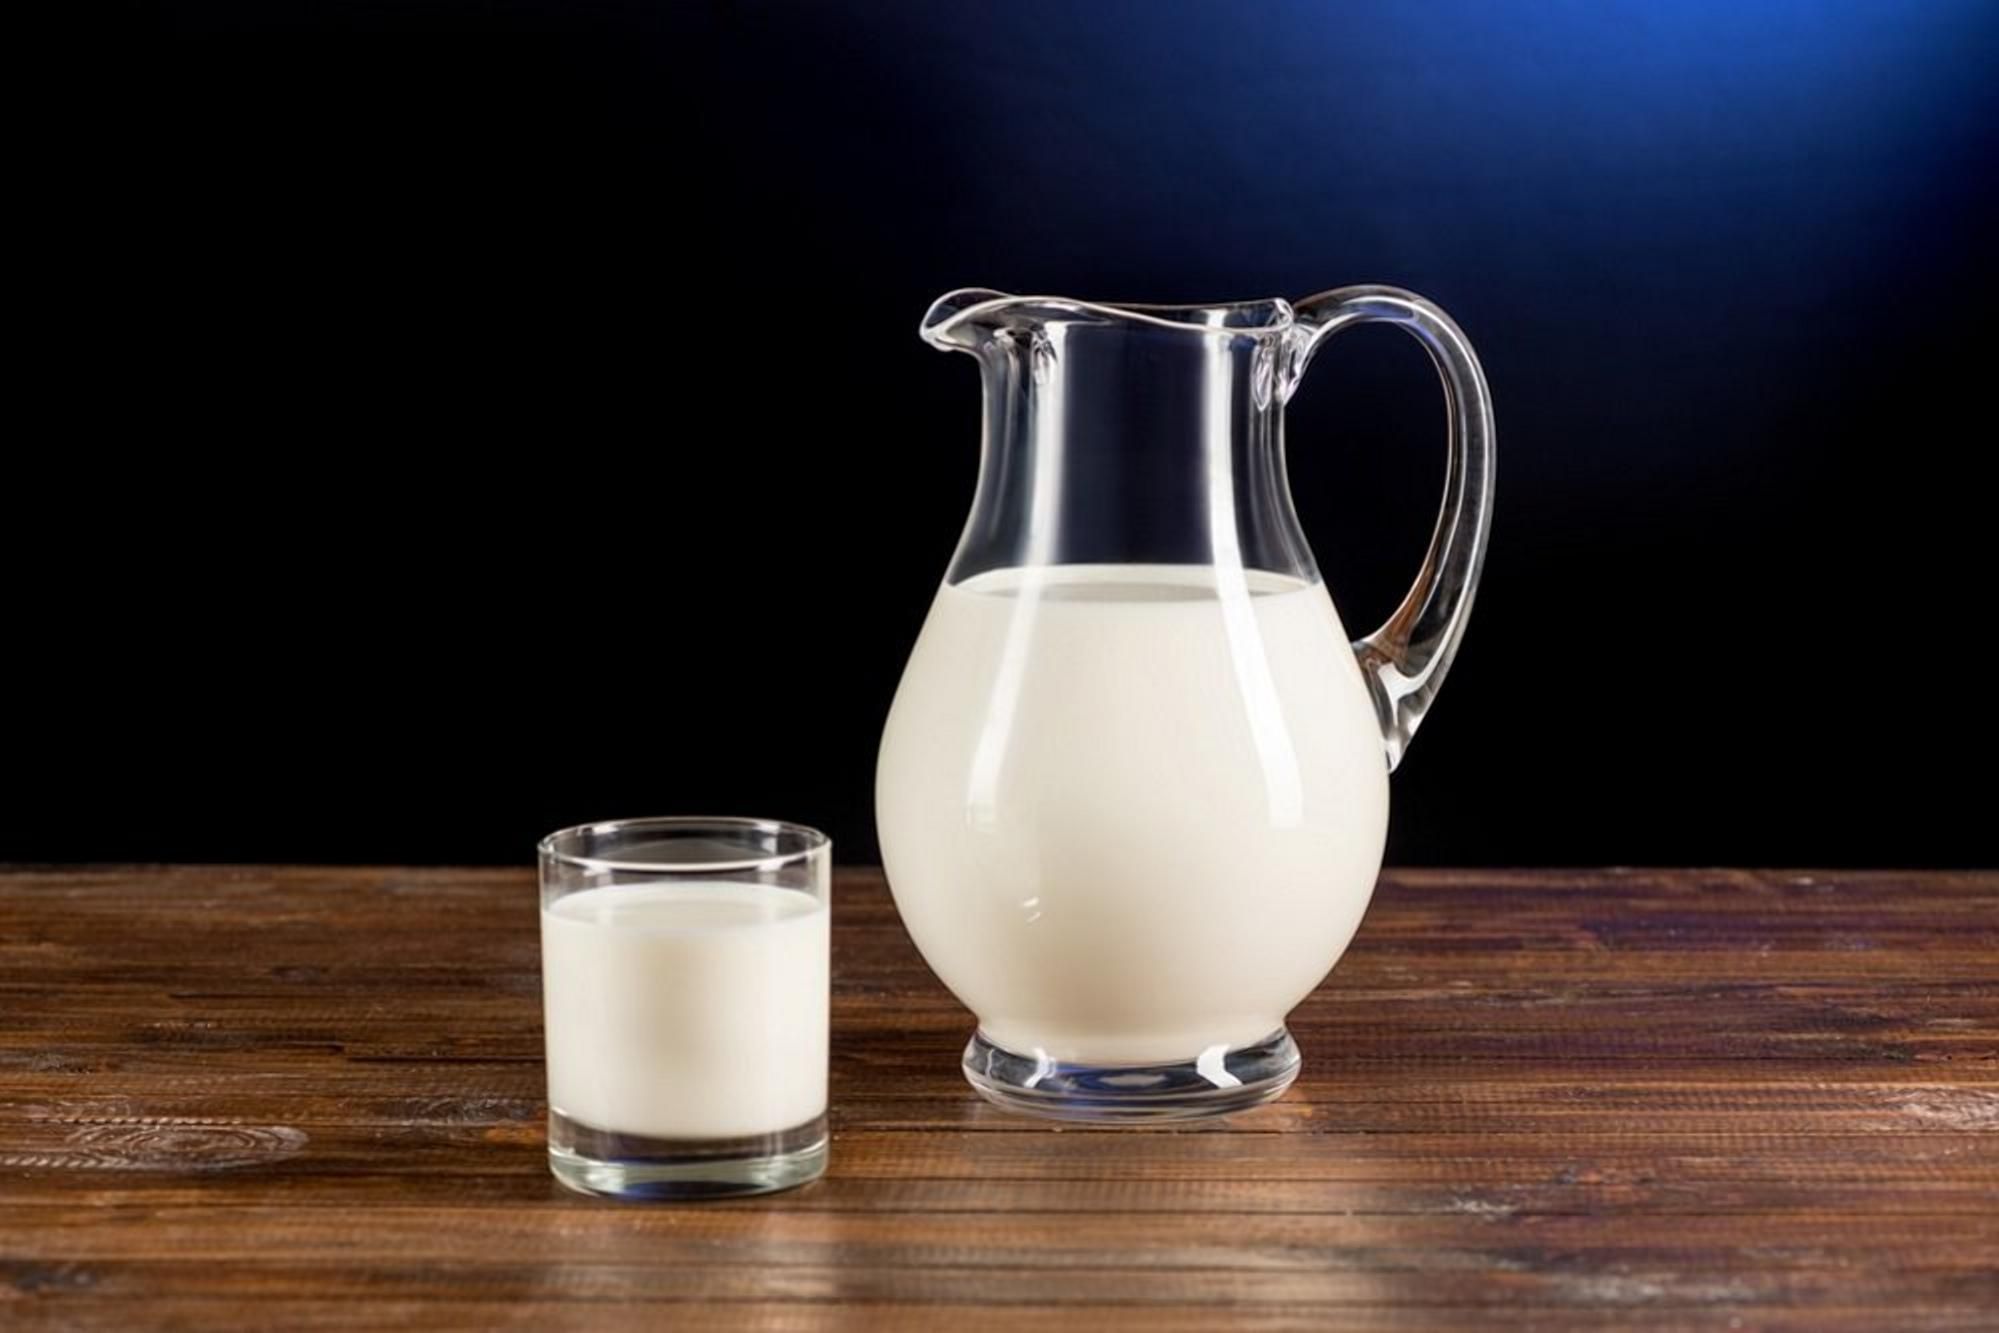 Ціна молока: коли чекати чи варто чекати зниження - Агро